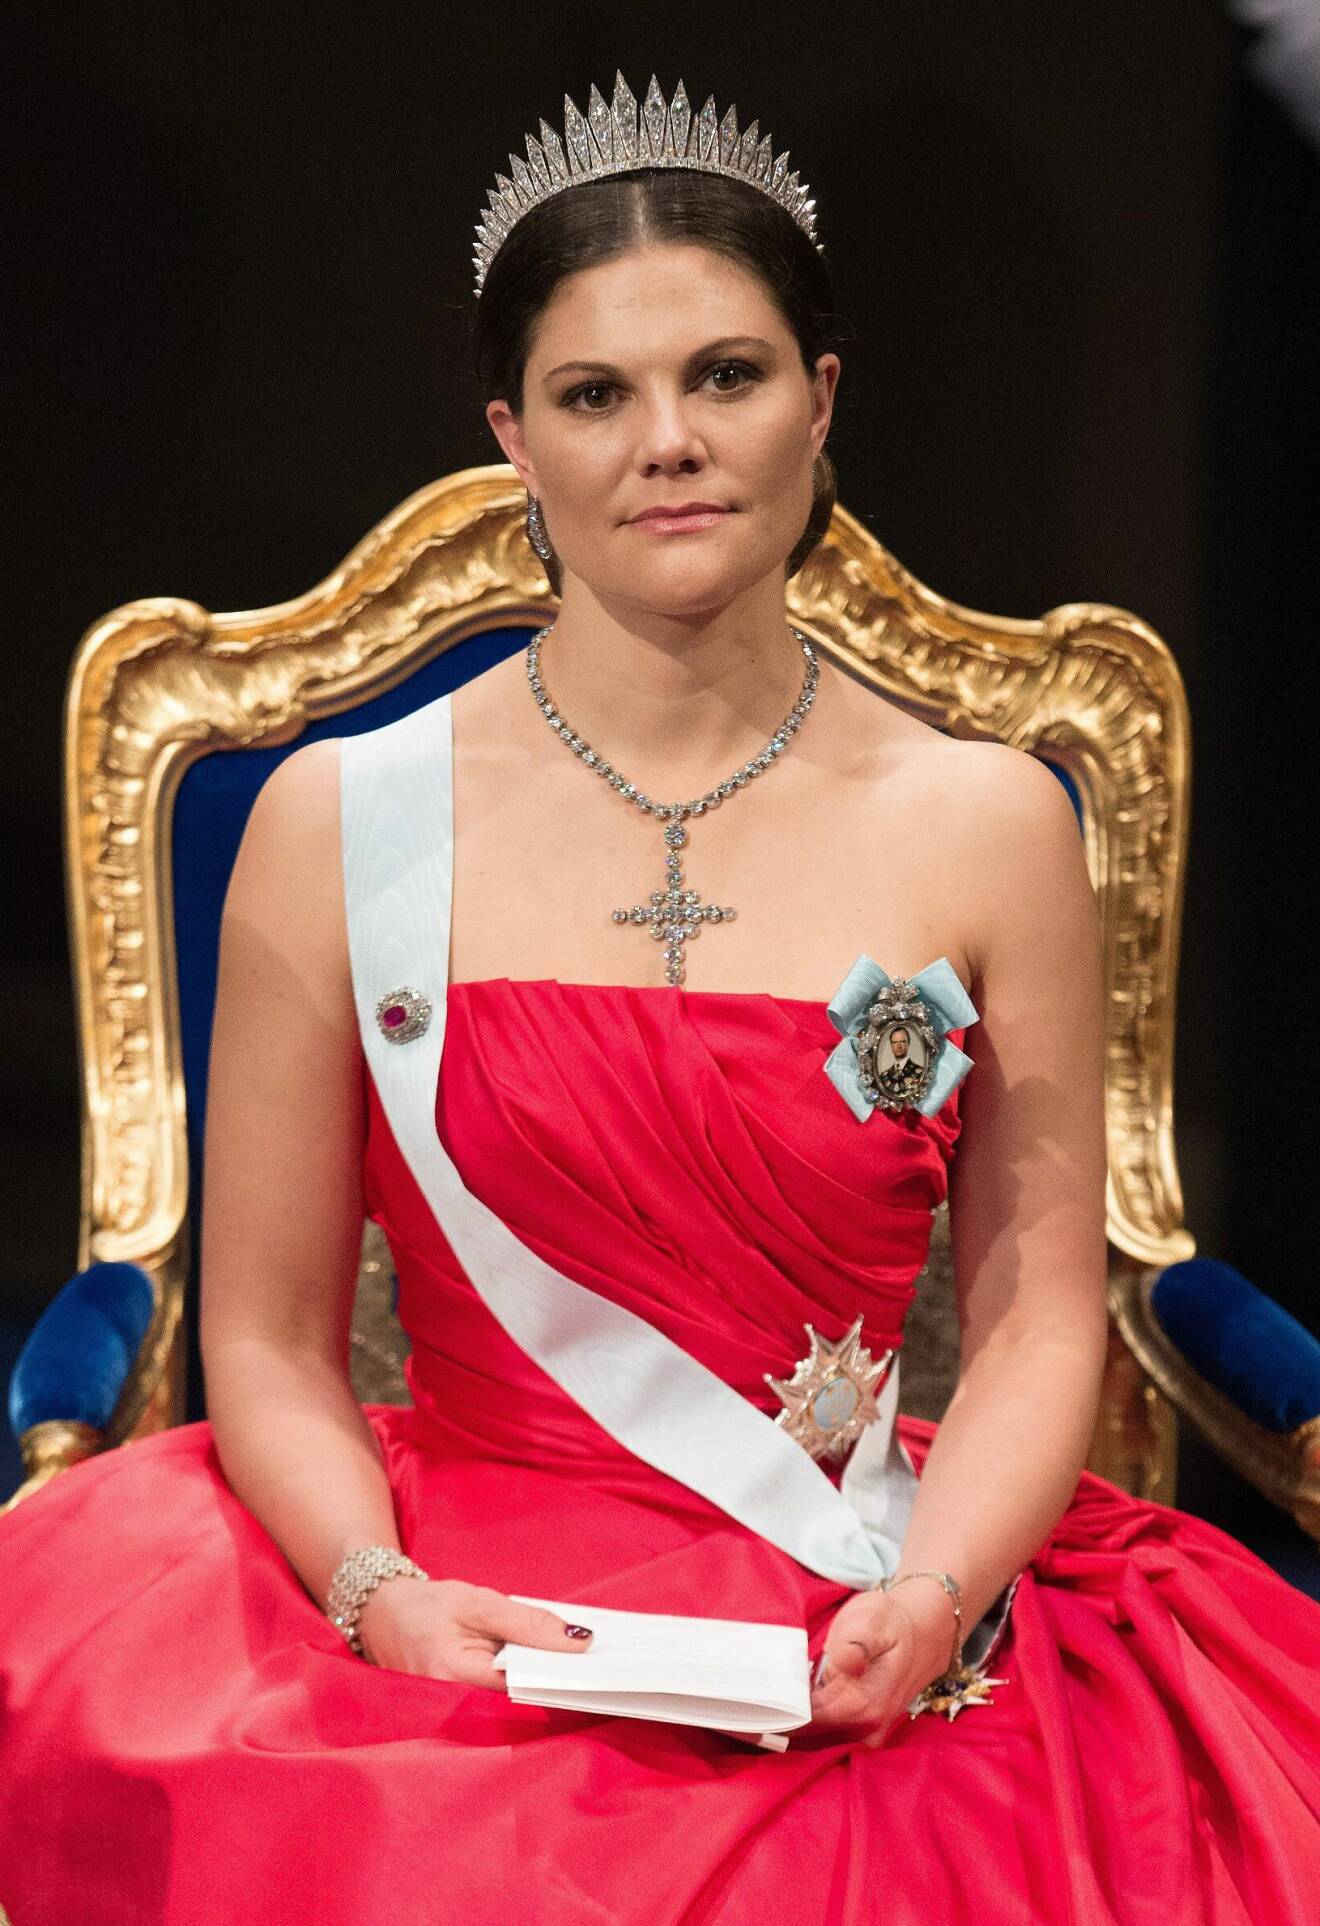 Kronprinsessan Victoria på Nobel i röd klänning av Pär Engsheden